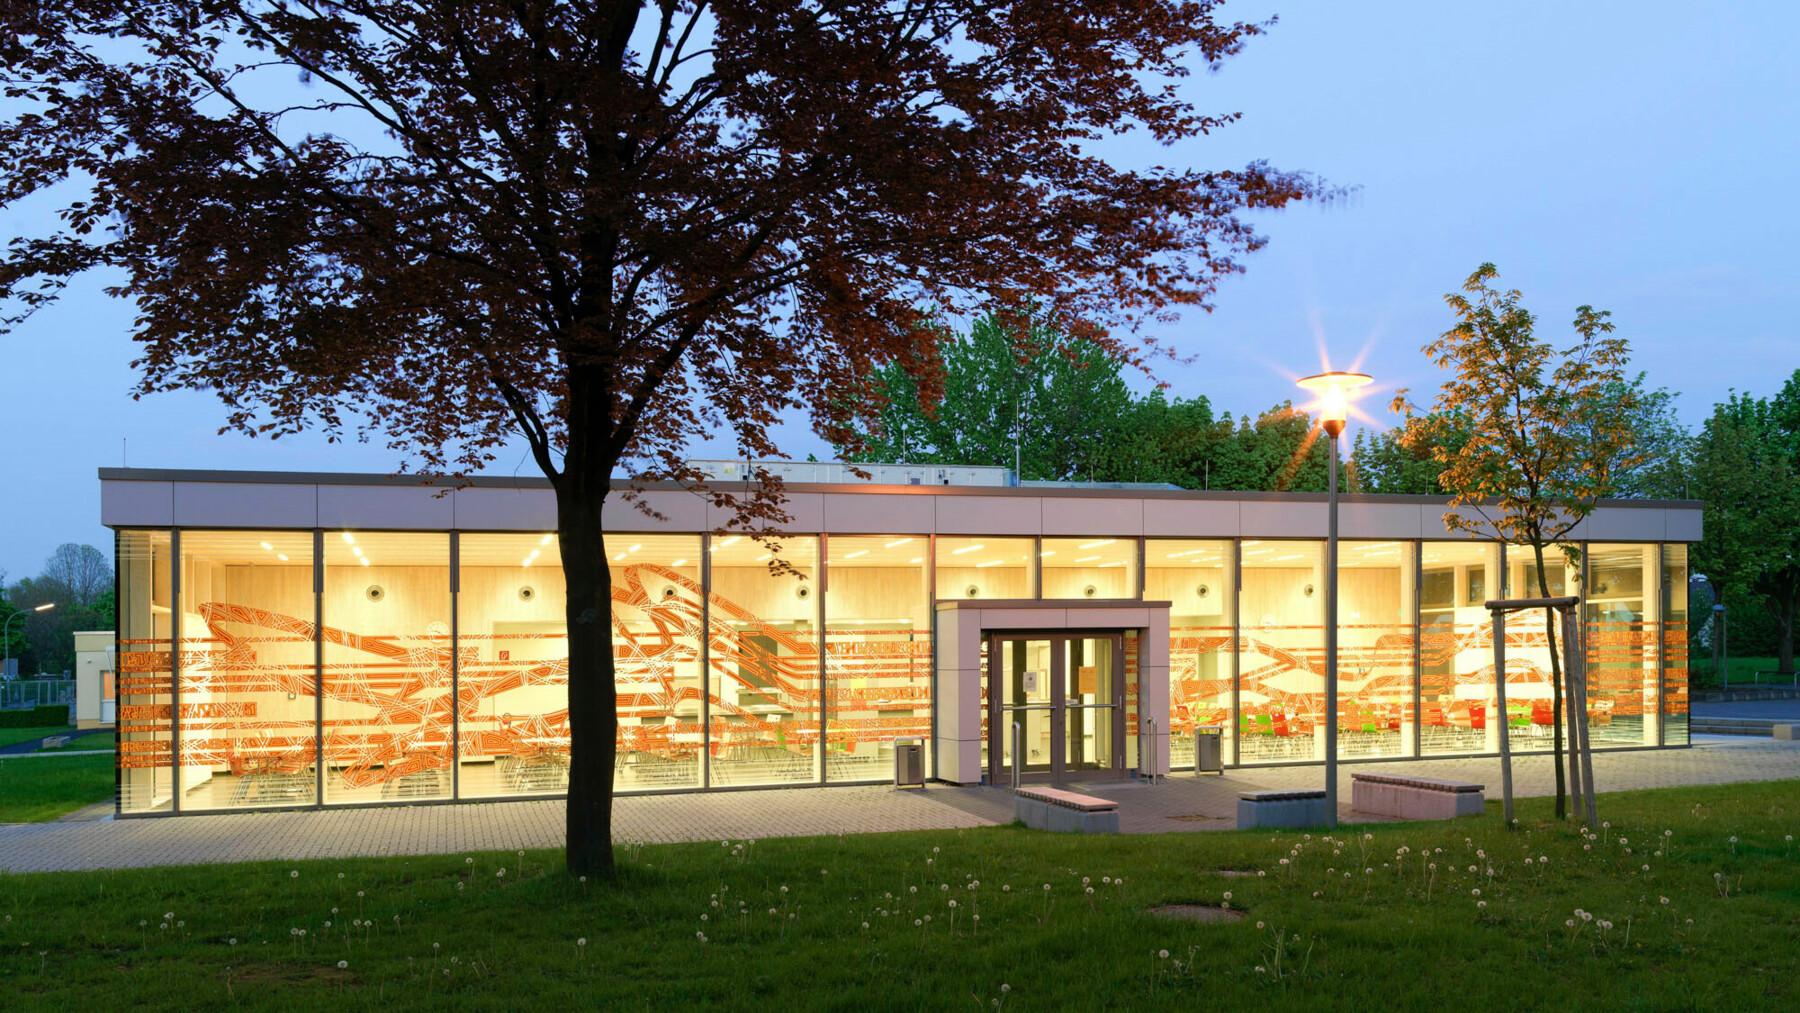 Die Mensa des Gymnasiums in Paderborn wird zur Westseite hin durch eine große Glasfassade mit Bemalungen in sanfter Erdfarbe begrenzt.